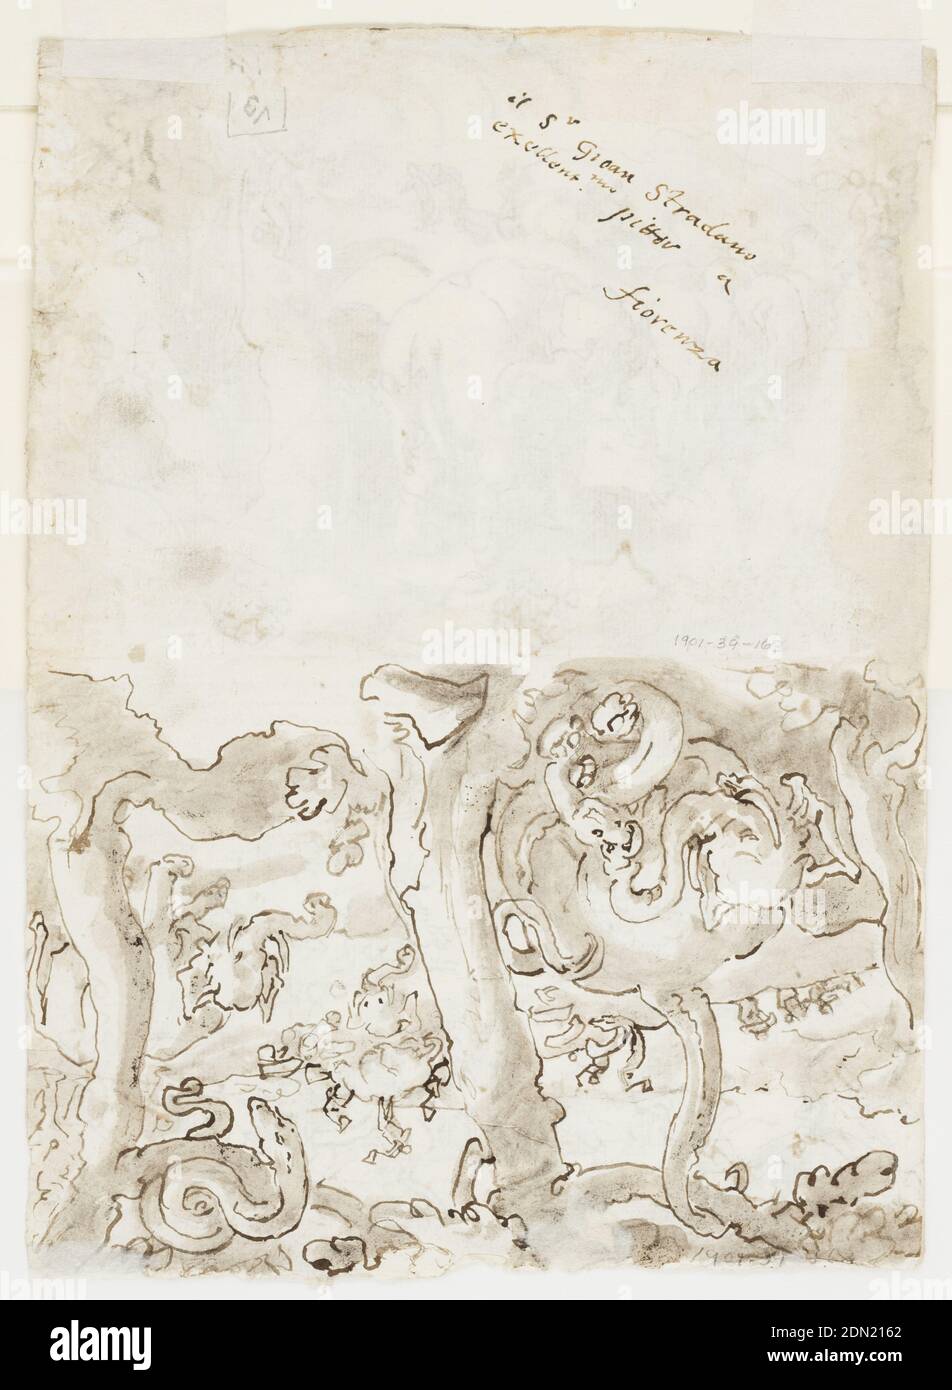 Recto, ci-dessus: Éléphants chassés par Troglodytes [Cavemen], de l'histoire naturelle de Pliny, Livre 8, ch. 8; ci-dessous: Le roi de Perse chassant sur une île. Verso: Lutte entre les éléphants et les serpents, d'après l'histoire naturelle de Pliny, Livre 8, ch. 11-12, Jan van der Straet, appelé Stradanus, flamand, 1523–1605, encre de plume et de brome, pinceau et lavage brun sur papier blanc, en haut, les éléphants sont attaqués par de petits hommes équipés d'écloseries. En arrière-plan, des sections de la viande d'éléphant sont transportées au fur et à mesure que l'animal tombé est coupé. (Pliny The Elder, Histoire naturelle, VIII,8). Banque D'Images